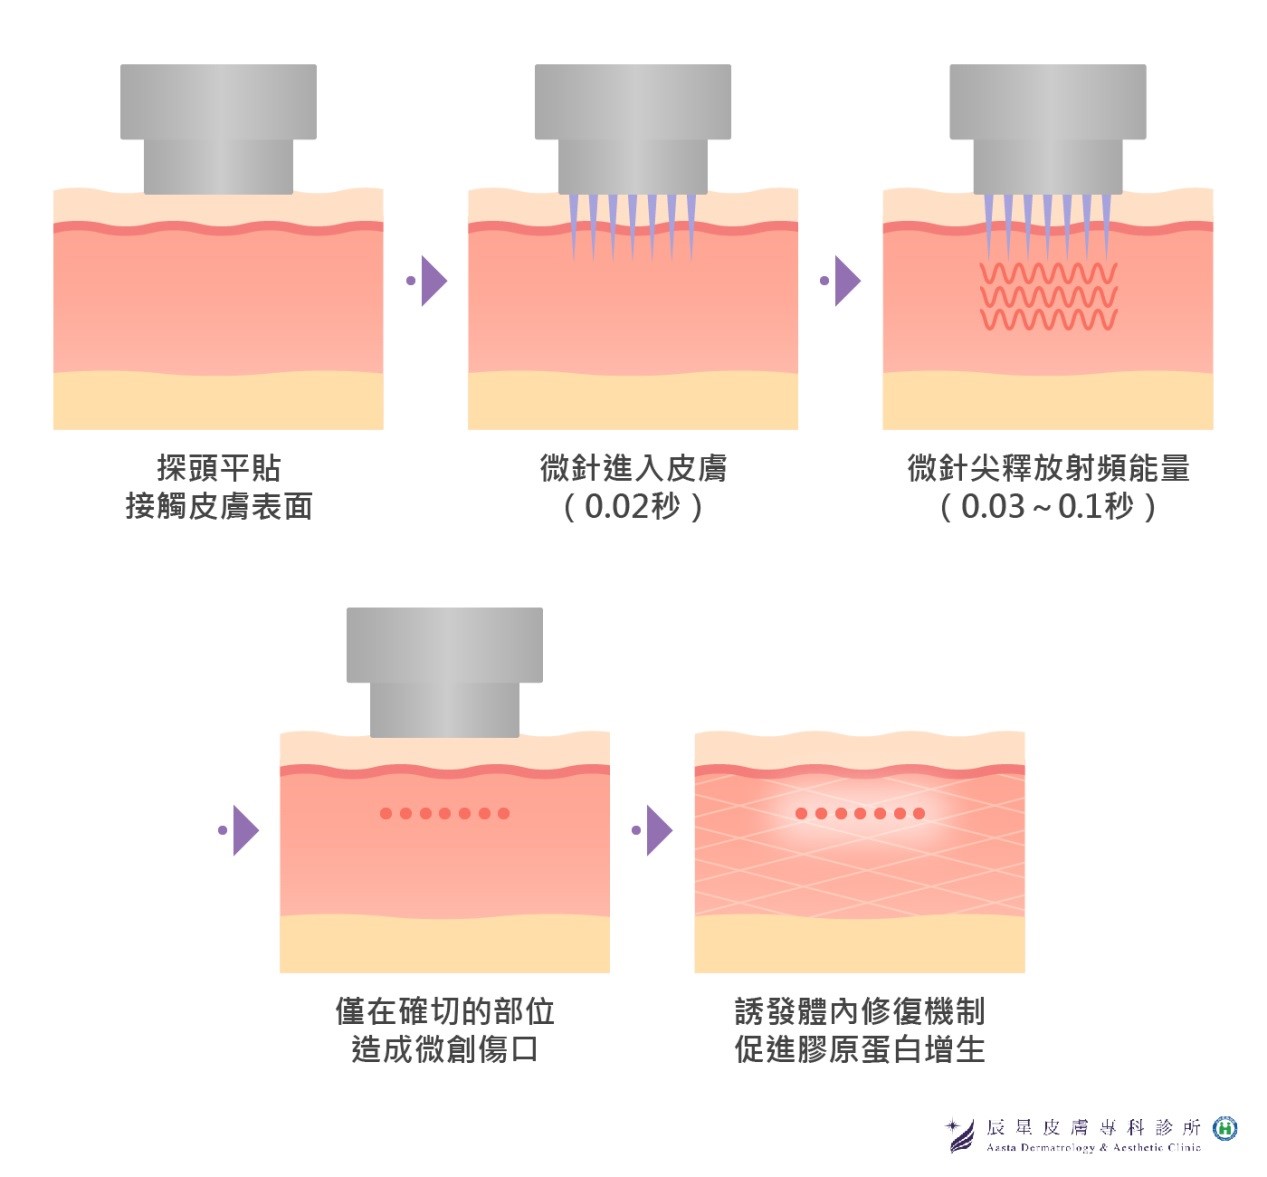 微針電波治療雙下巴是透過極細小的微針，藉由皮下熱能傳導刺激真皮層膠原蛋白新生